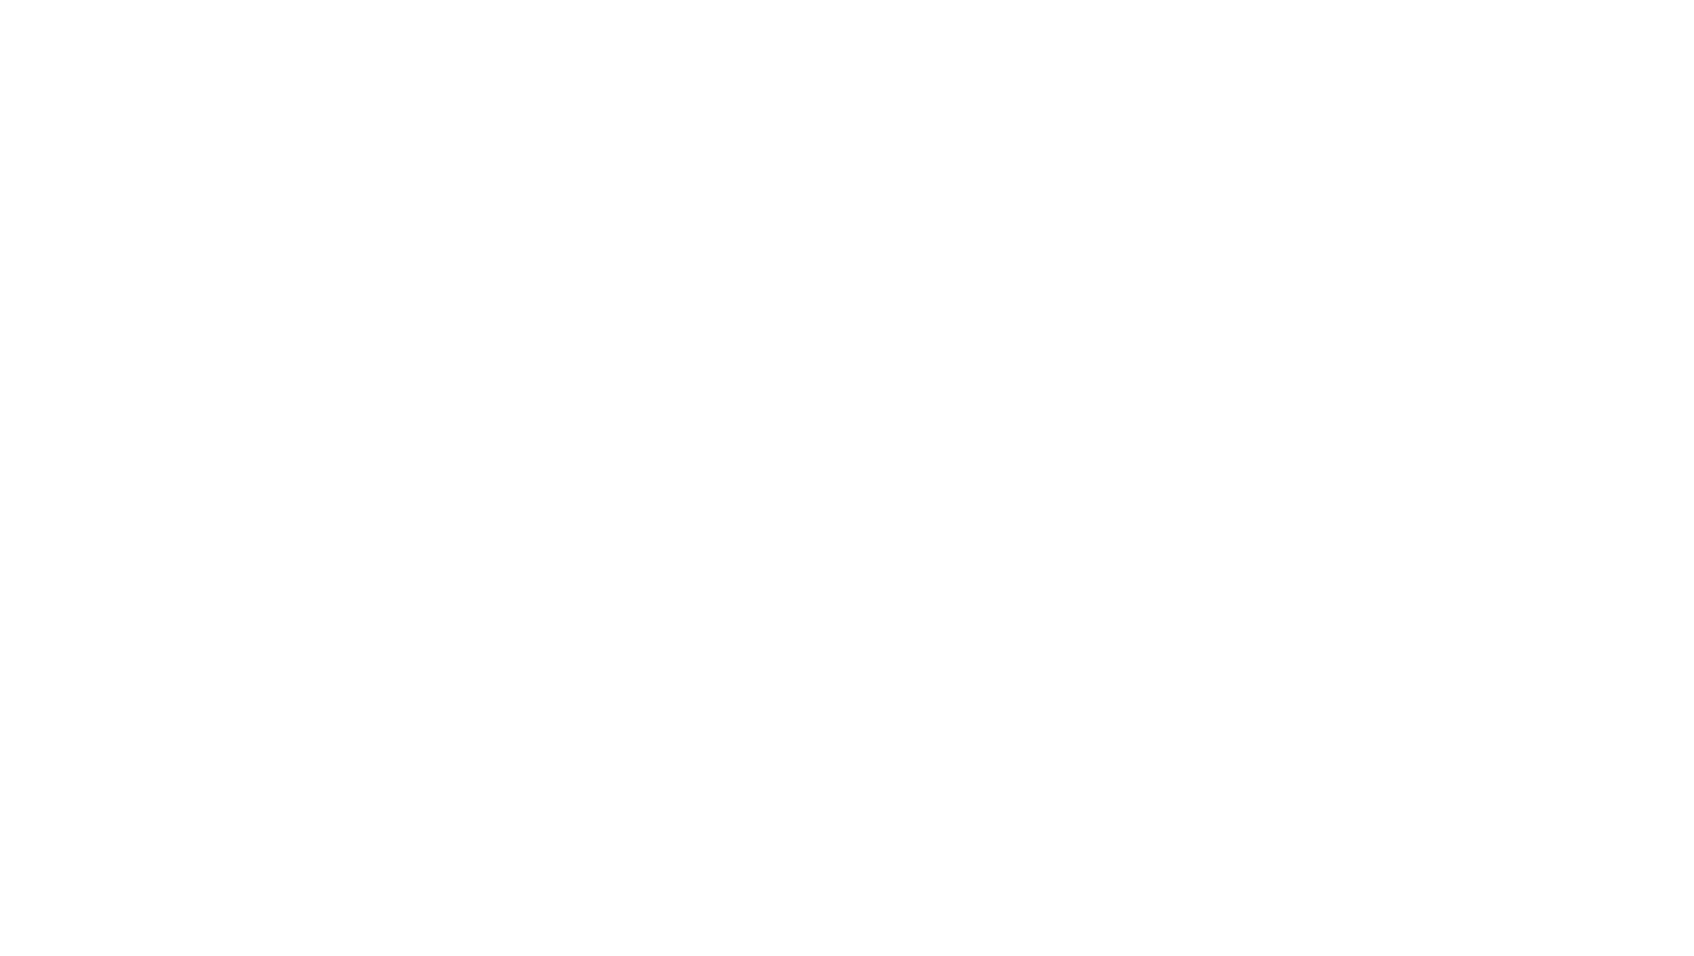 Logo Santé publique France